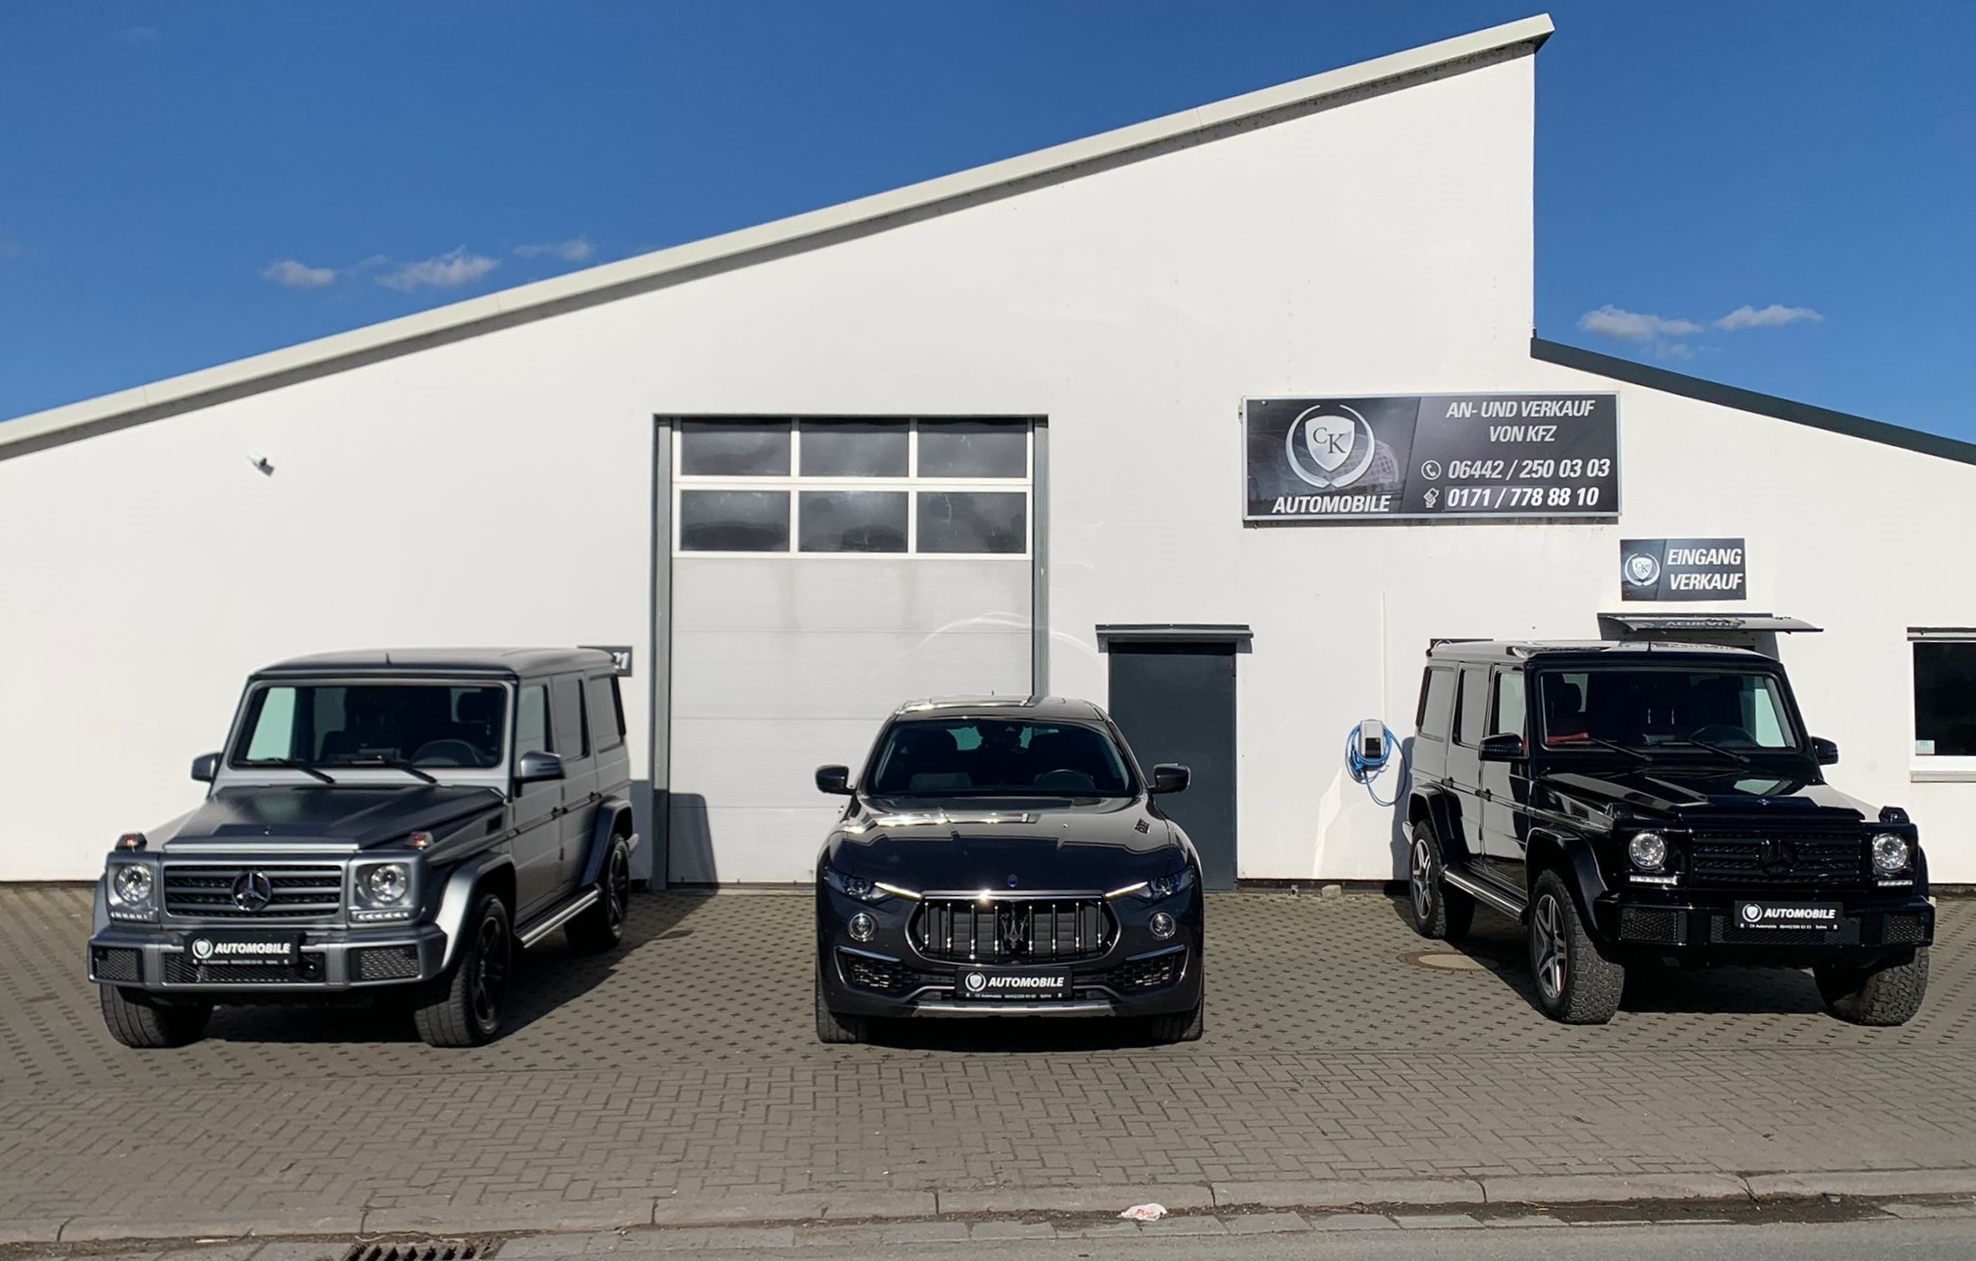 Bild vom CK Automobile Gebäude in Solms mit drei Autos davor